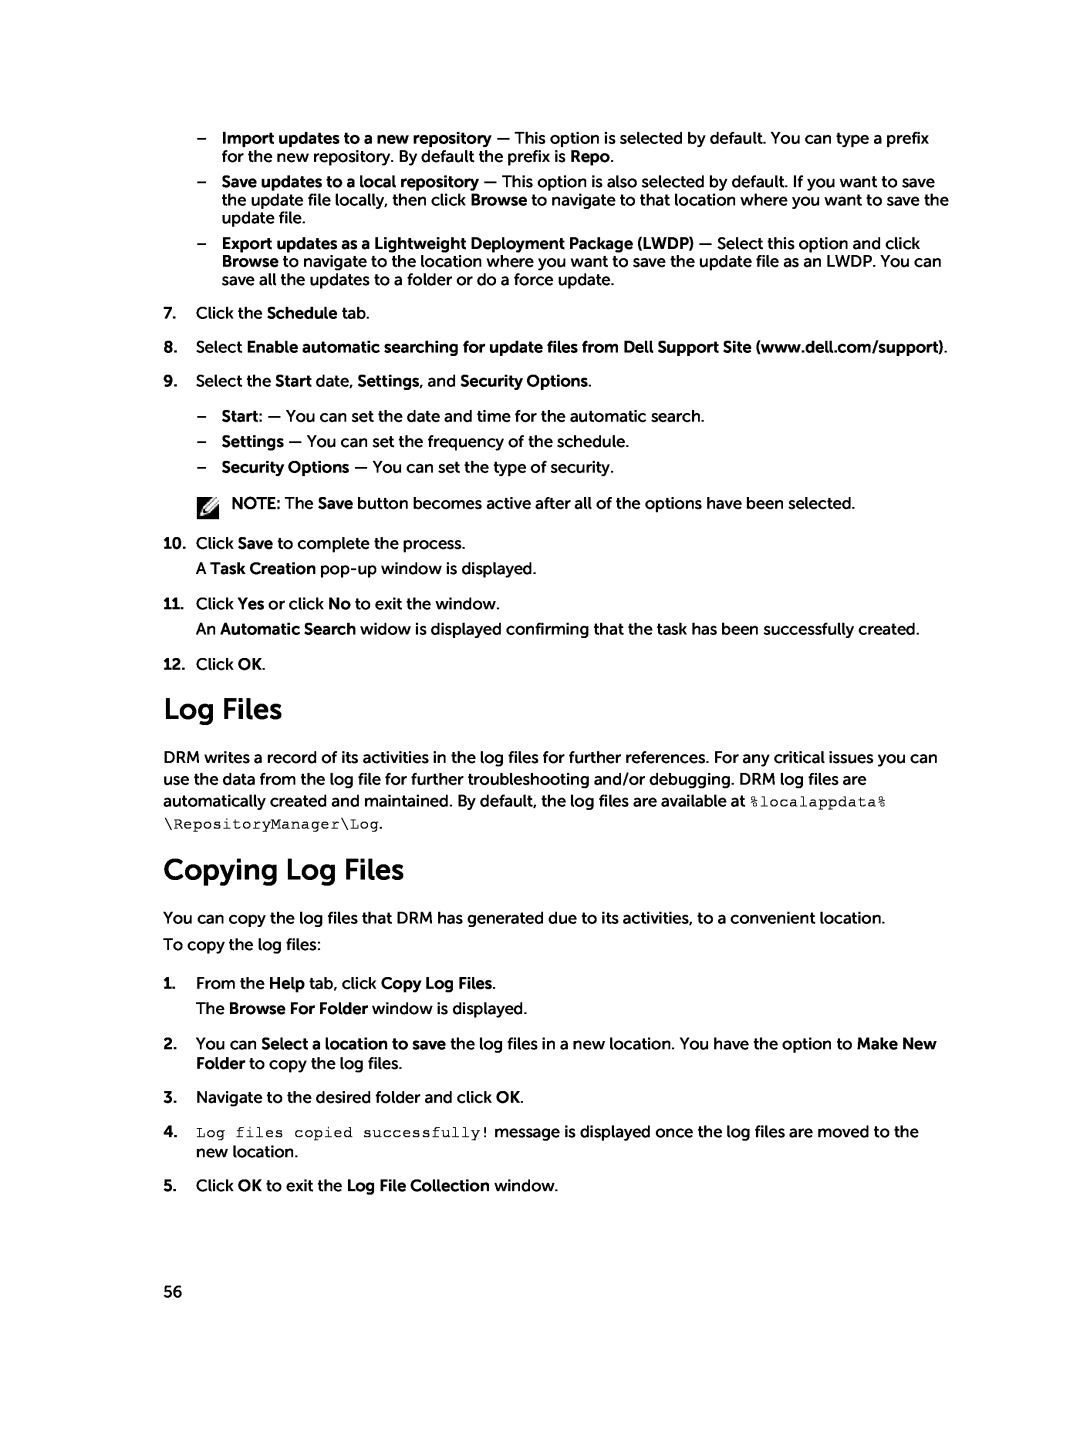 Dell 1.8 manual Copying Log Files 